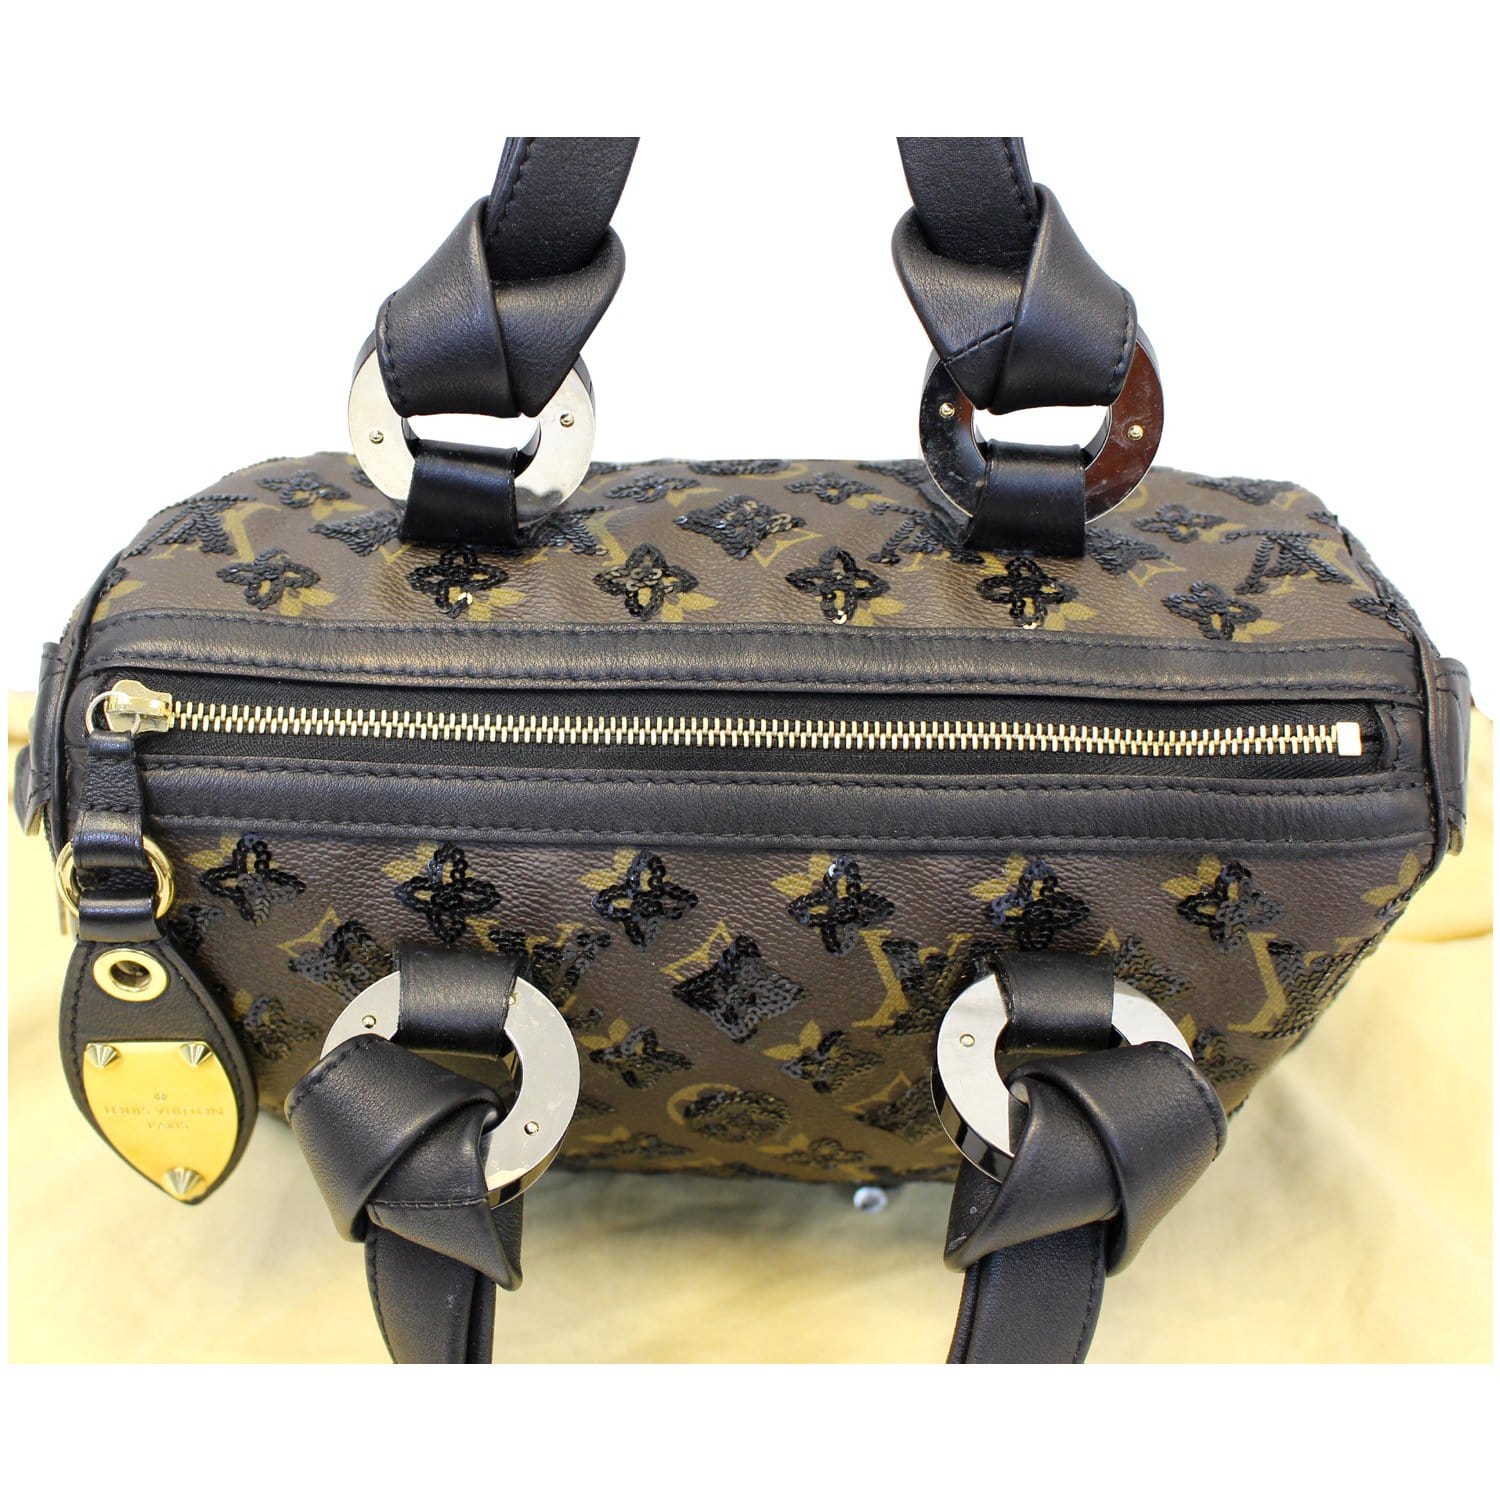 Louis Vuitton Sequin Speedy 30 Bag Auction (0006-2541889)